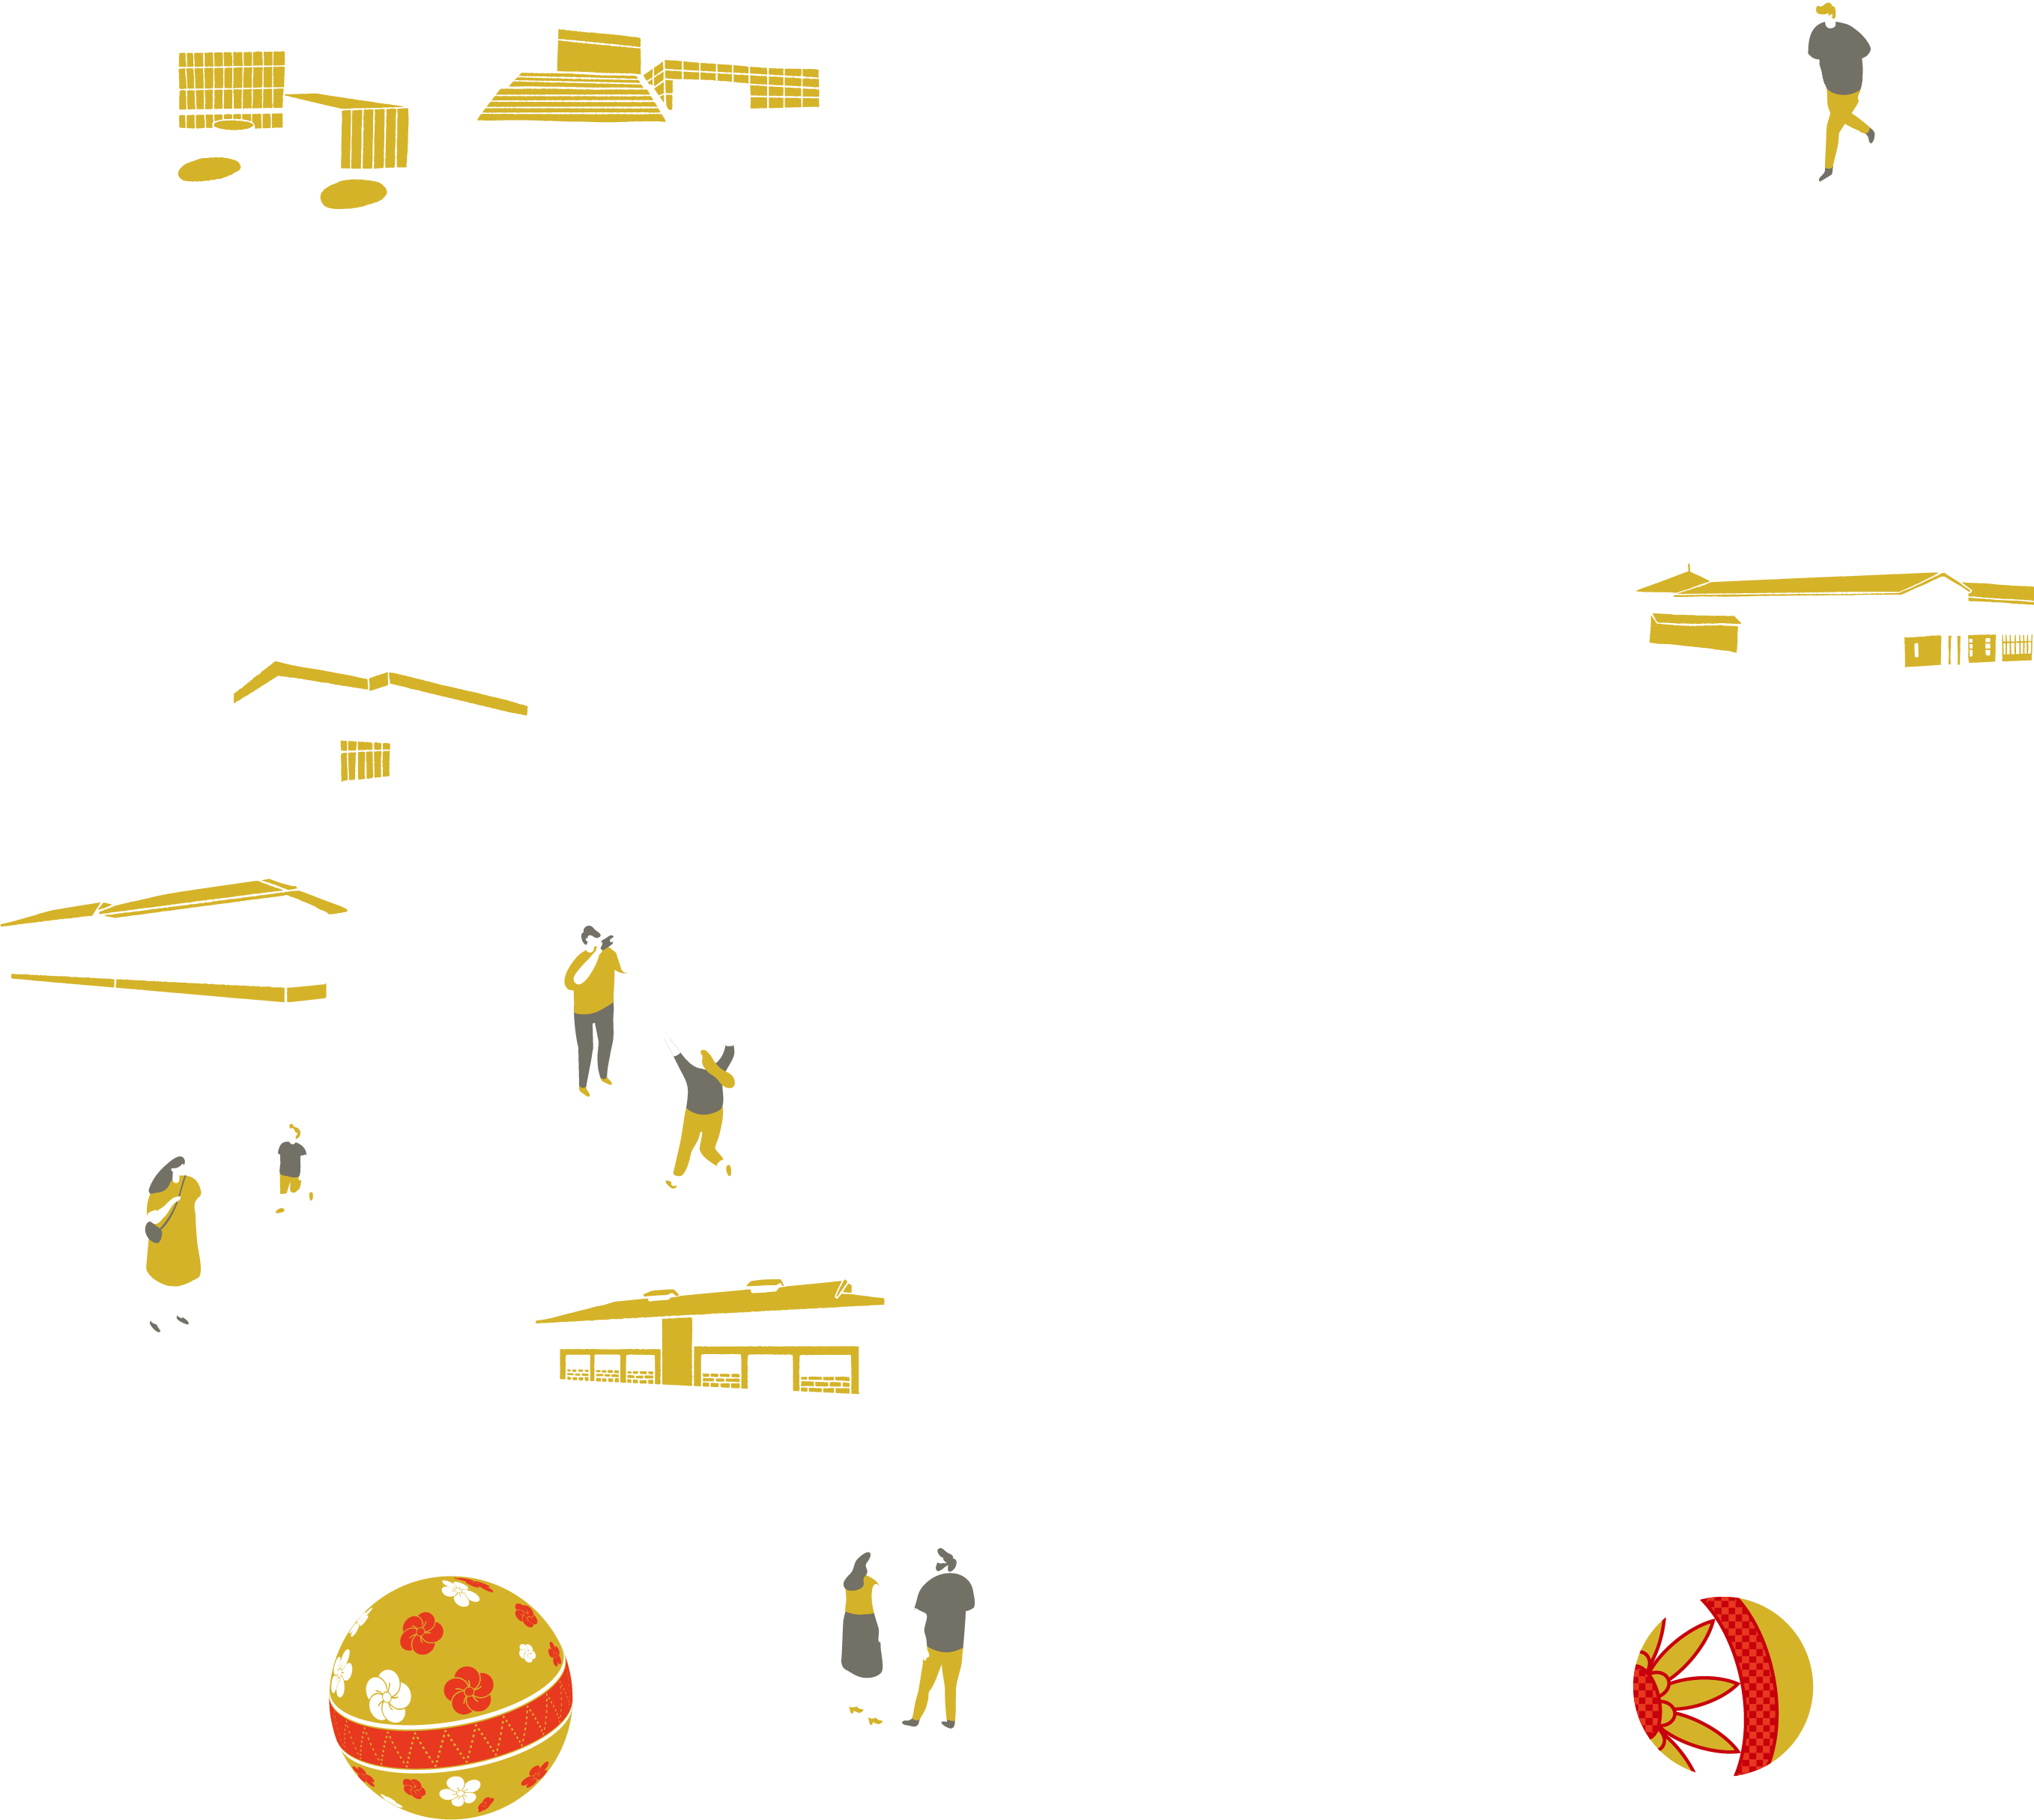 石川数字博物馆网络